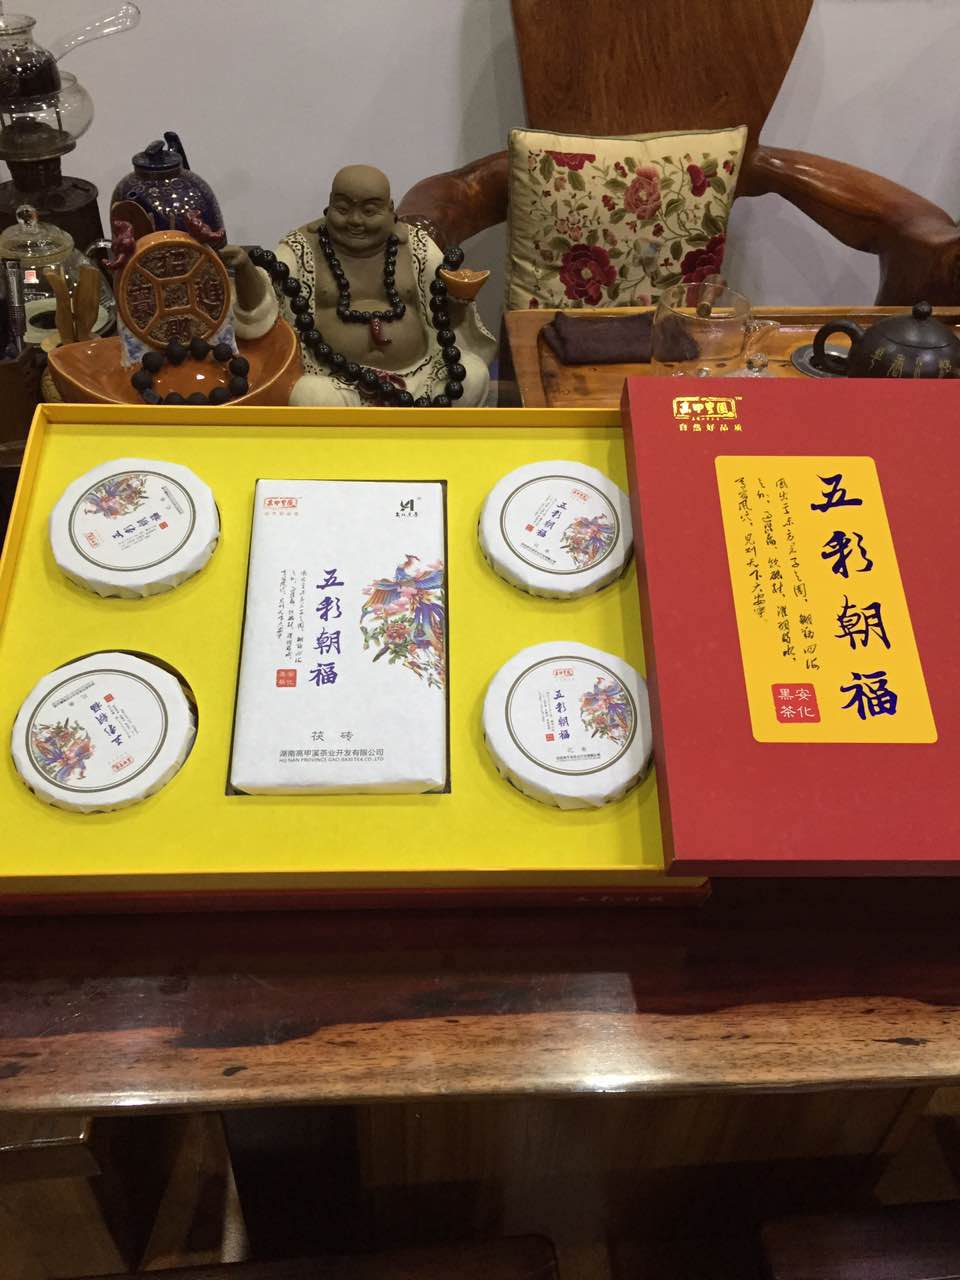 广州市安化黑茶厂家一品轩茶业 高甲皇园新出品的“五彩朝福” 安化黑茶 火爆热销